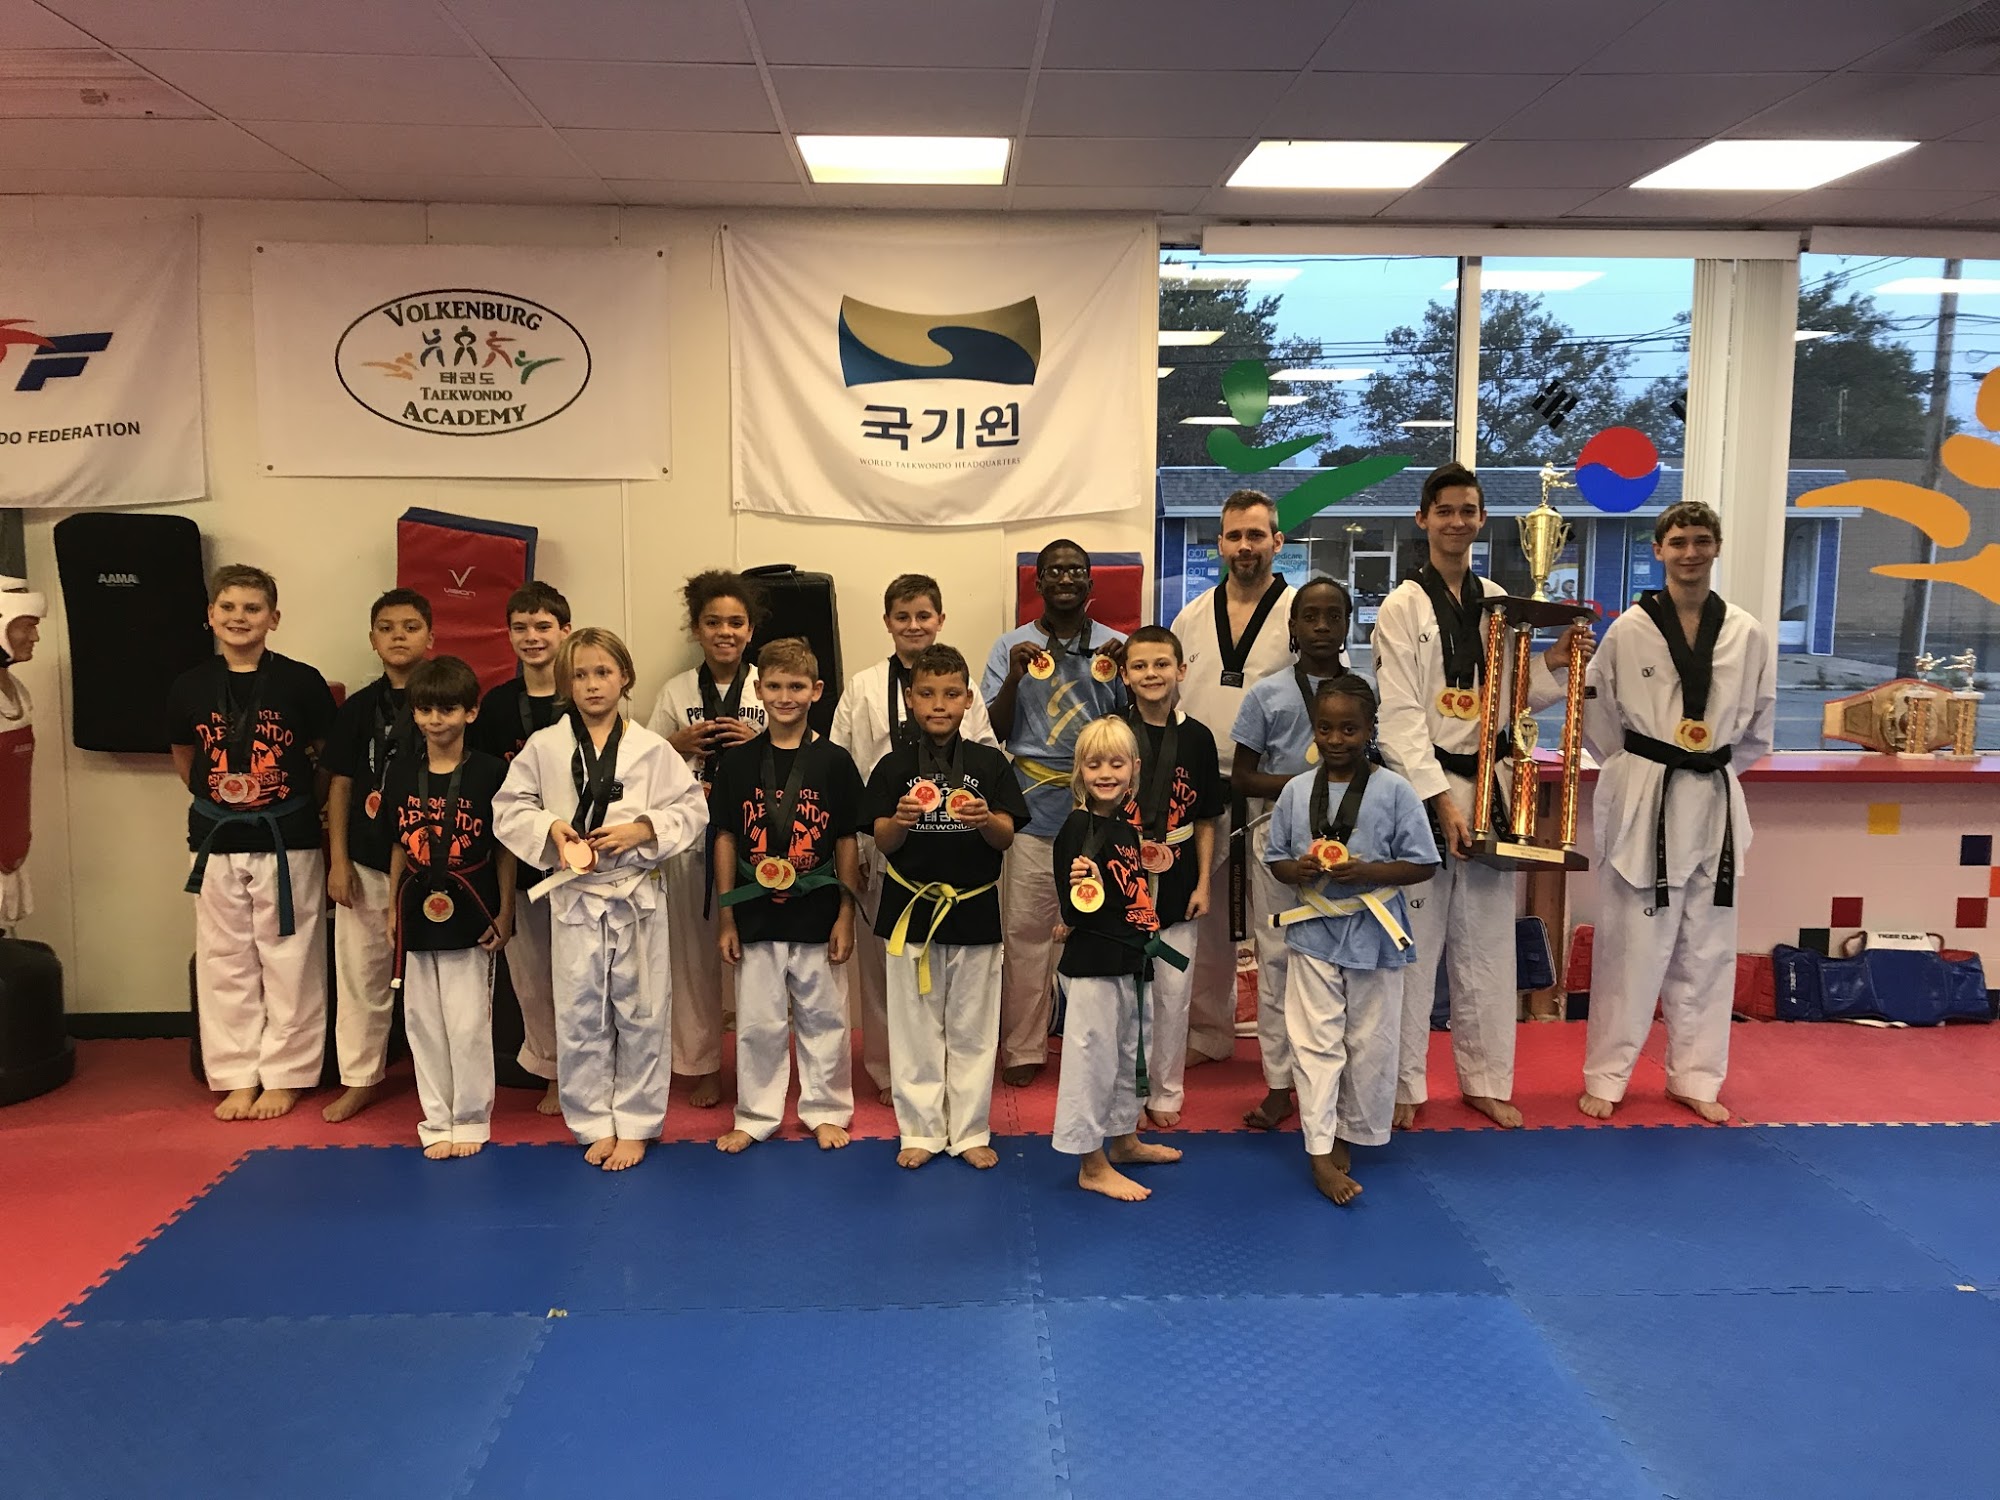 Von Volkenburg Taekwondo Academy